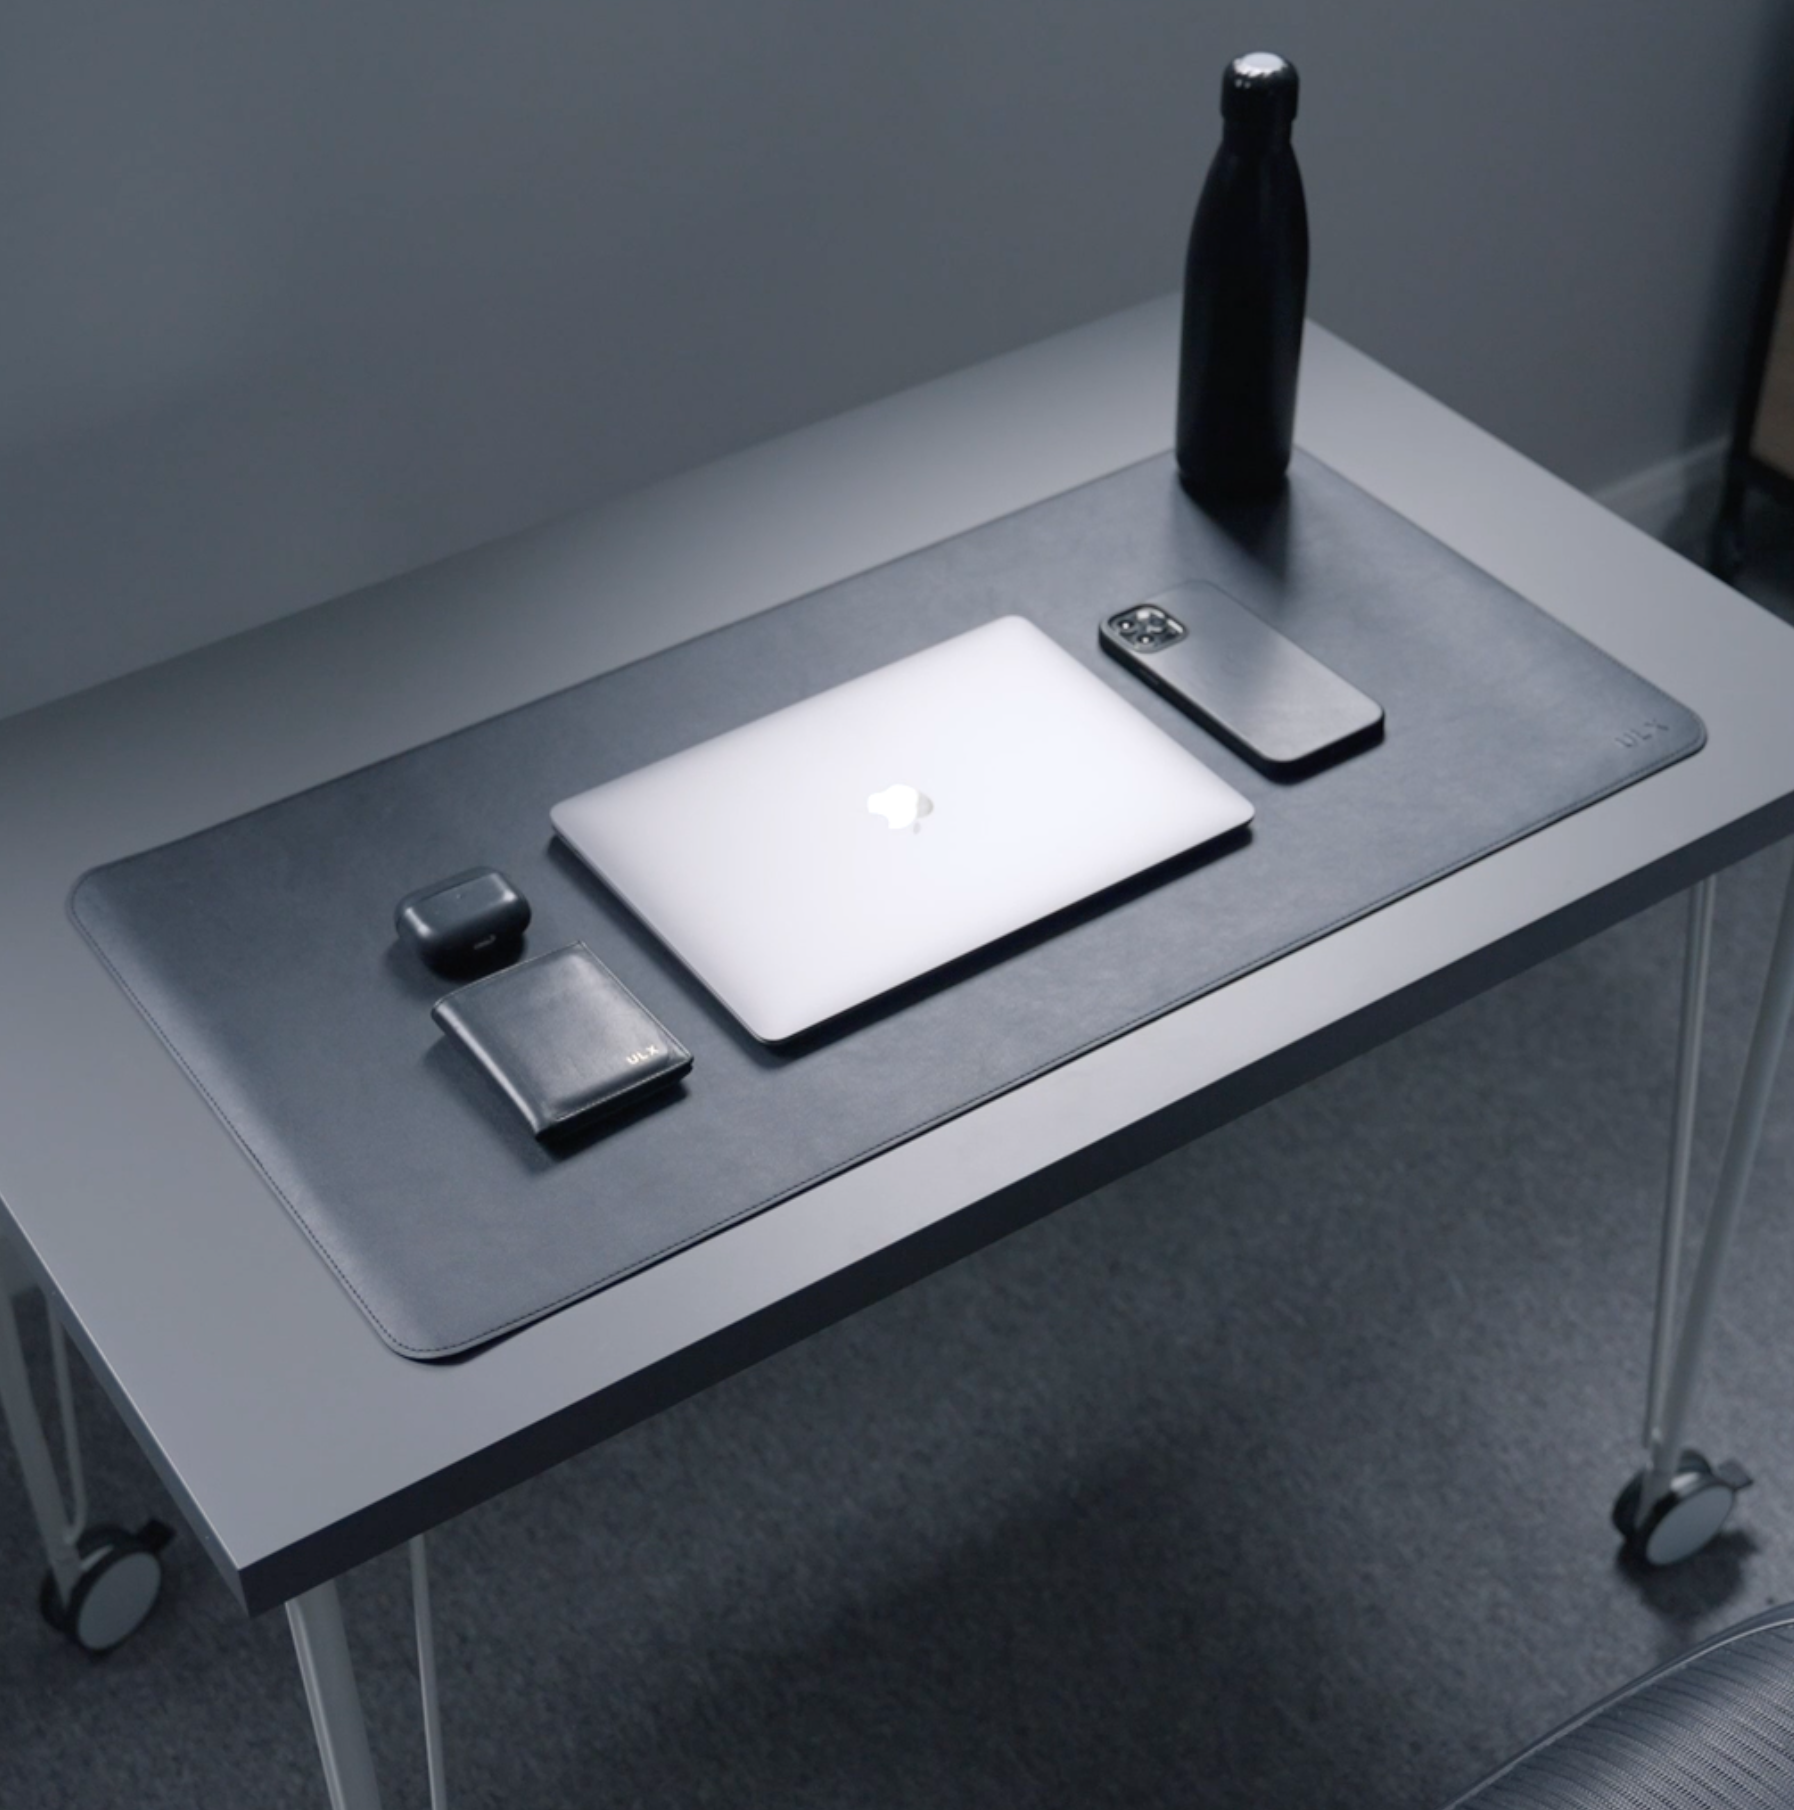 ULX Minimalist Desk Mat